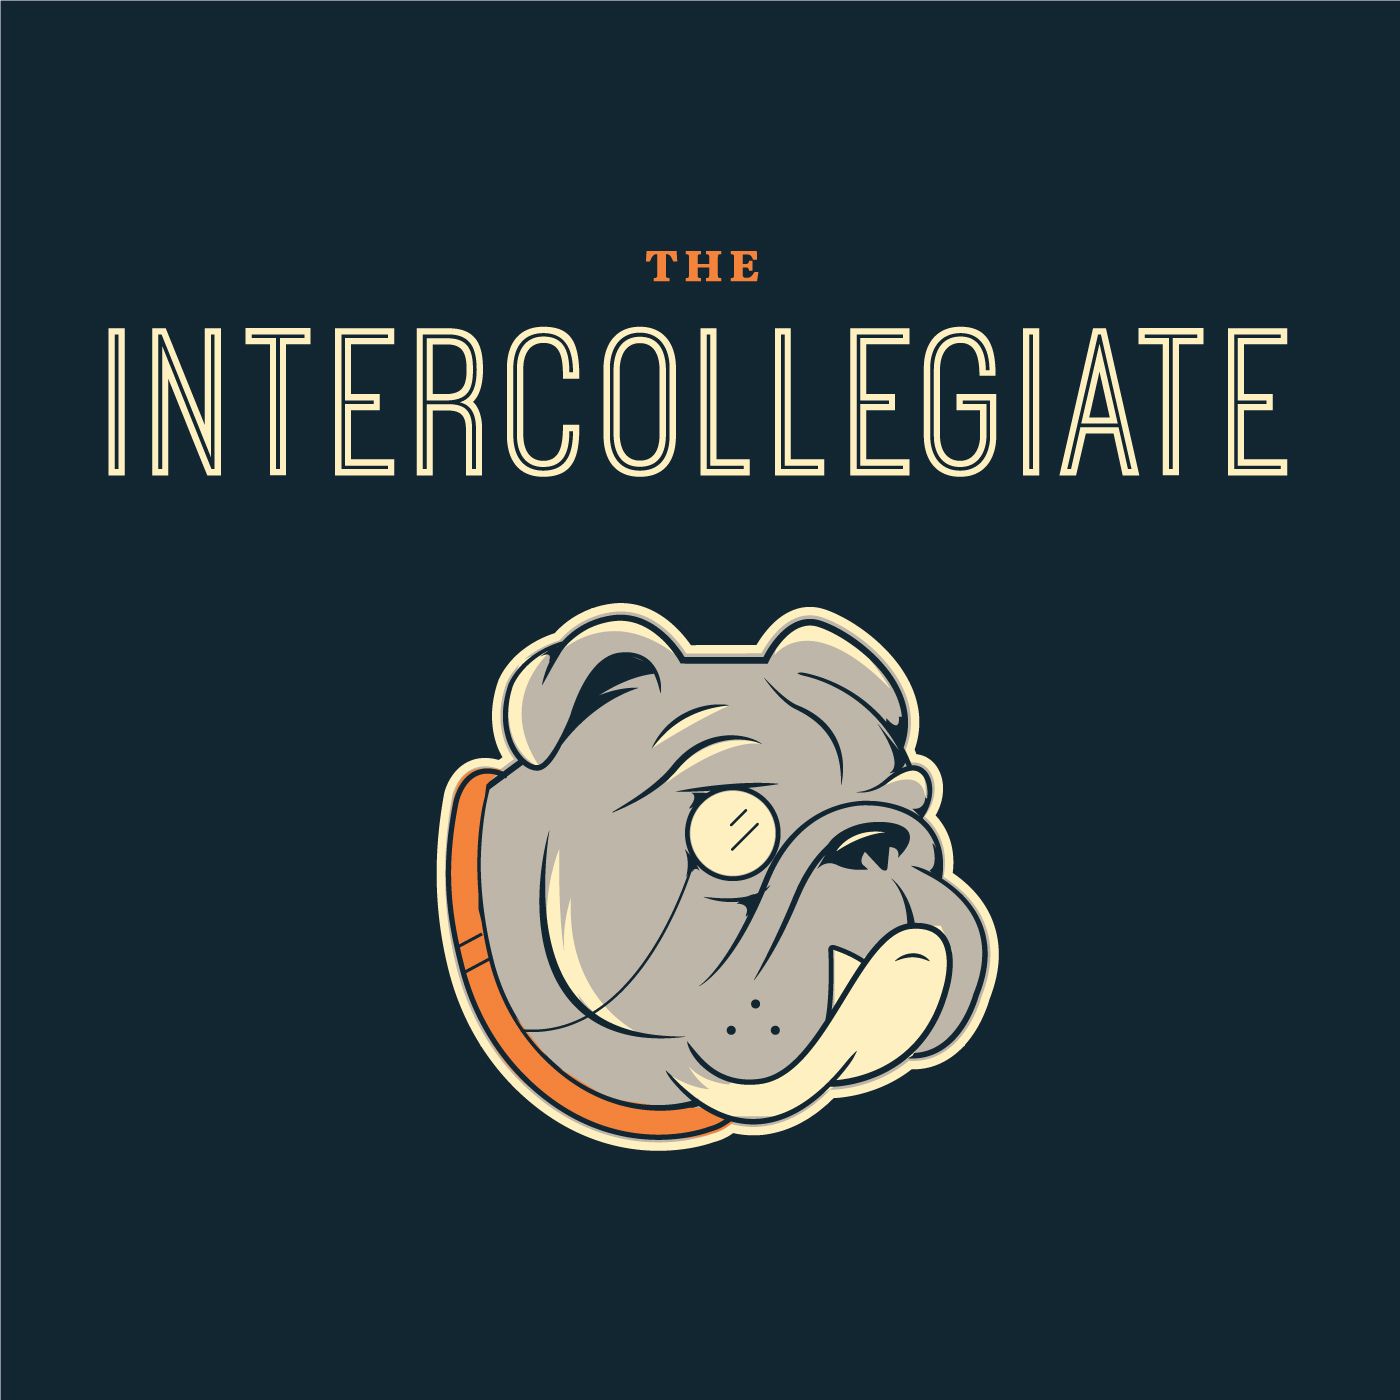 The Intercollegiate